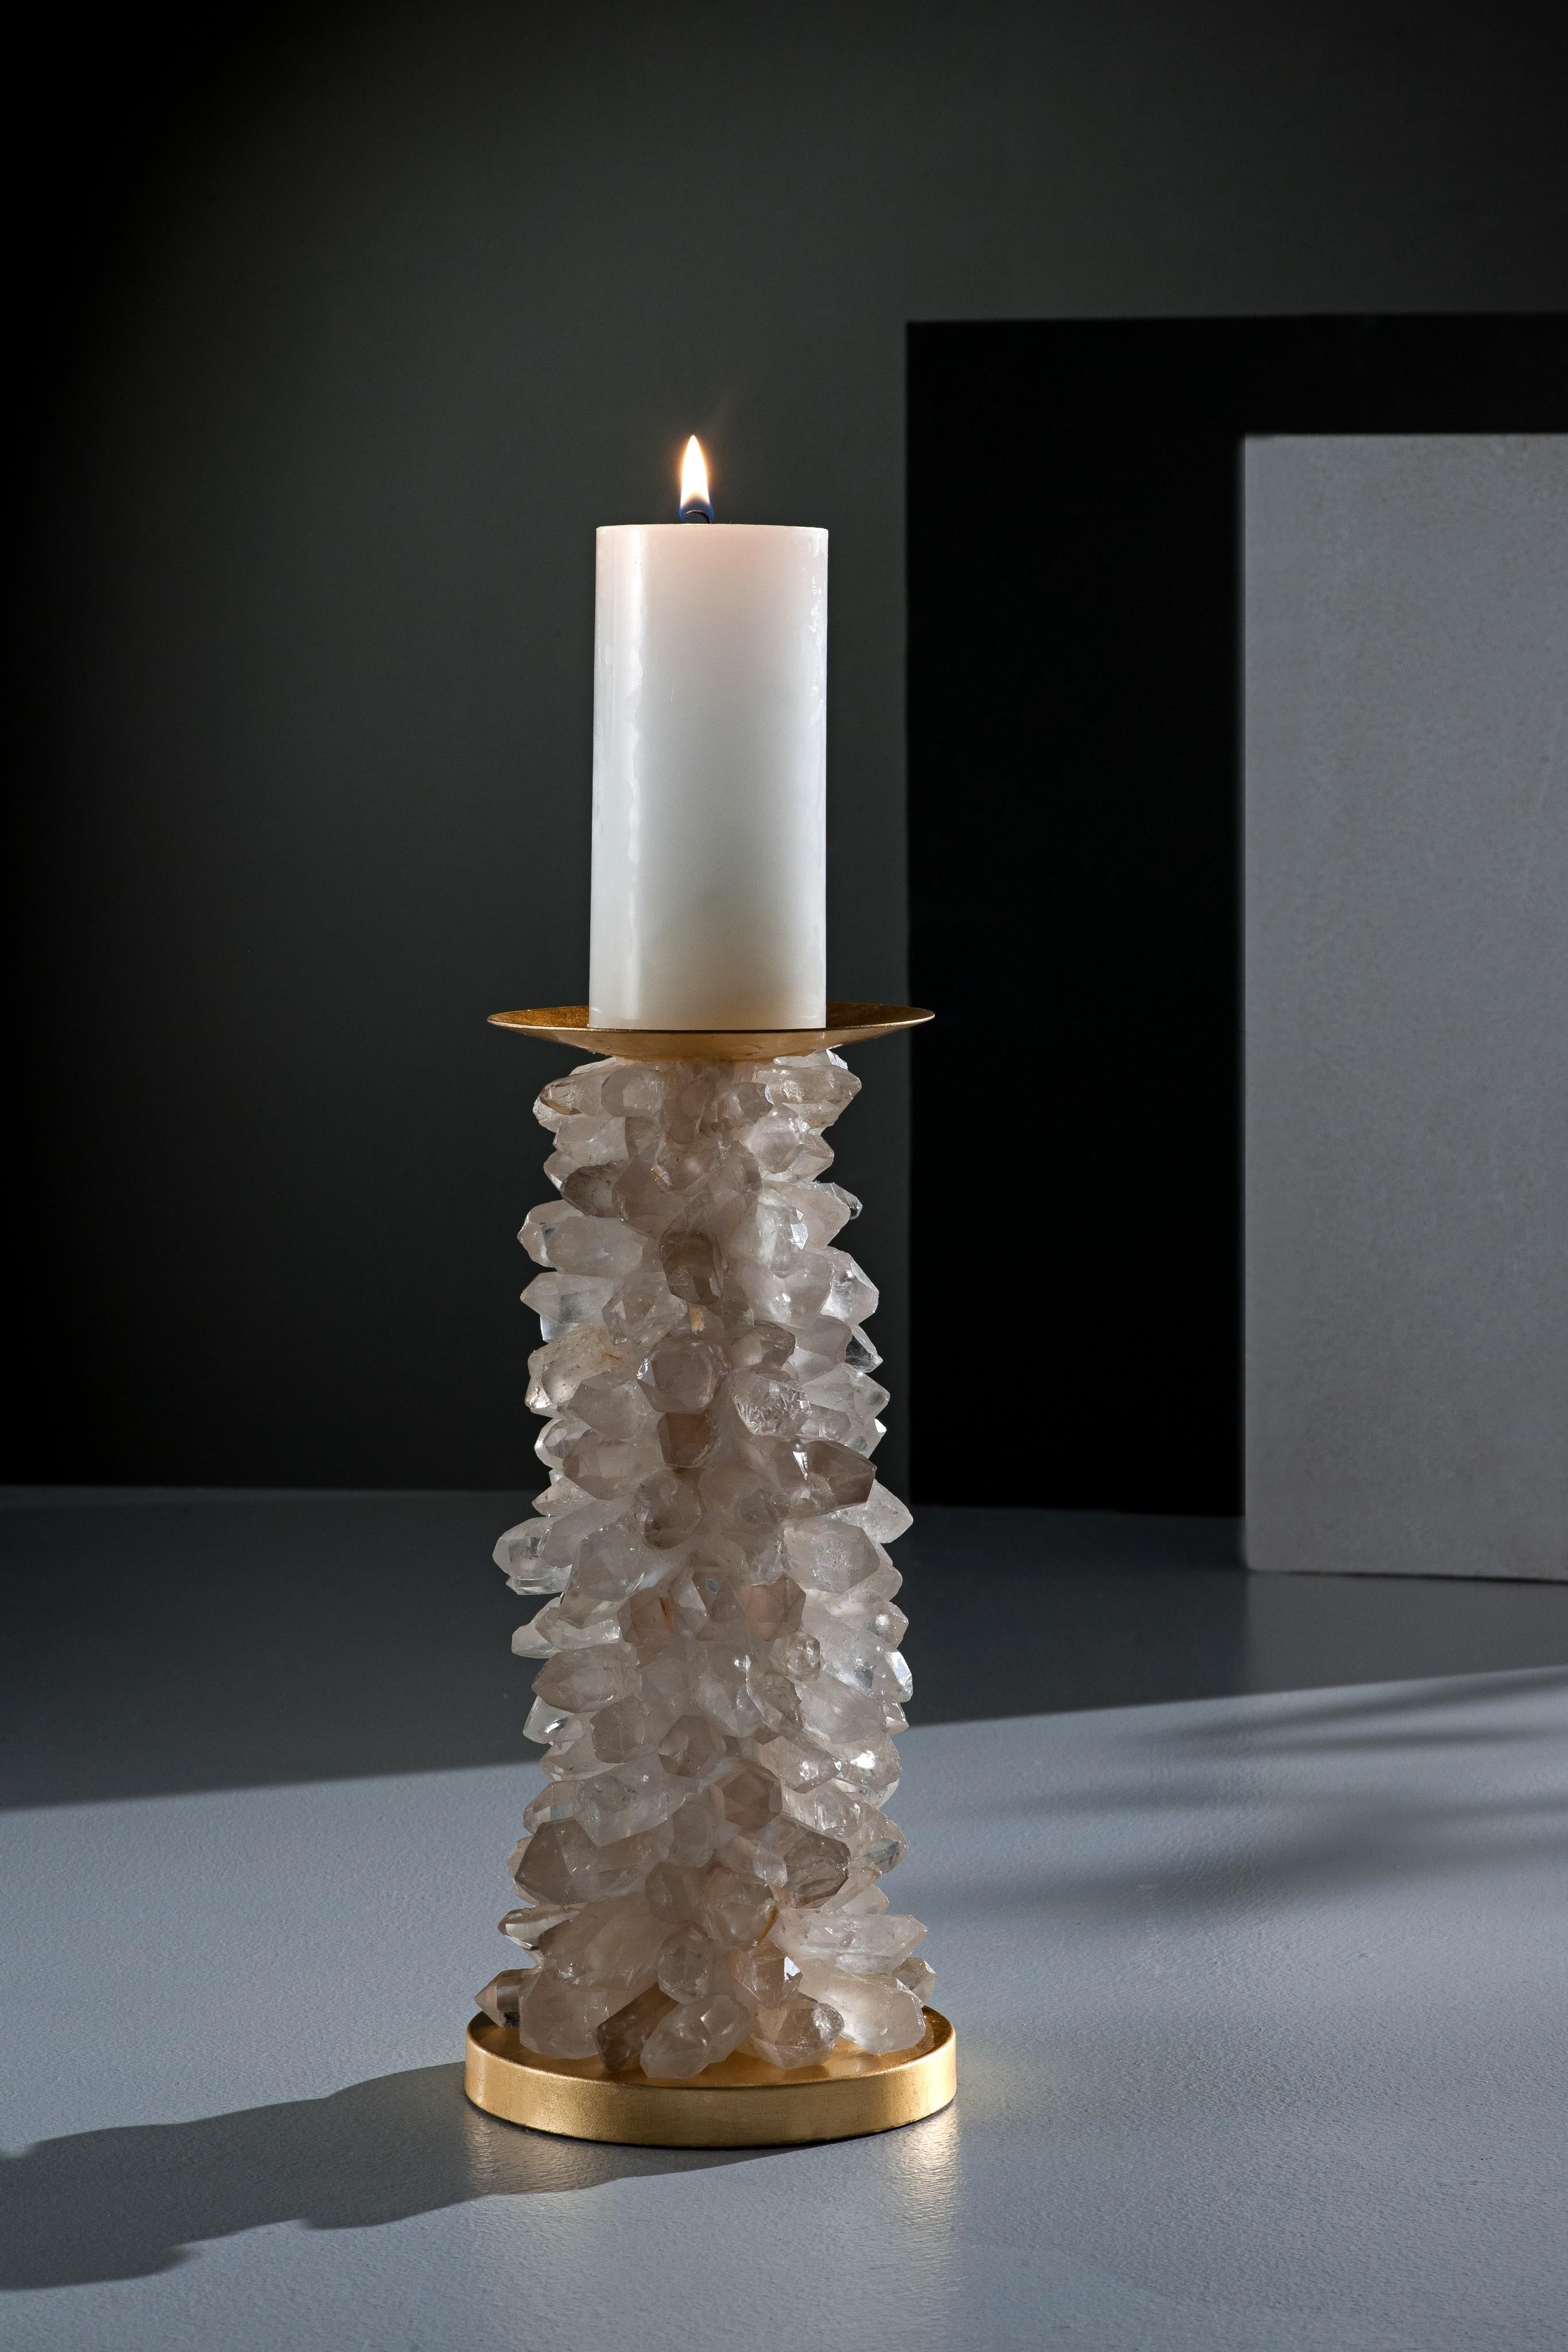 Candle holder, Large Quartz Points by Aver 
Dimensions: D 14 x H 28 cm
Materials: Quartz, Steel, Polyvinyl chloride, Resin.
 